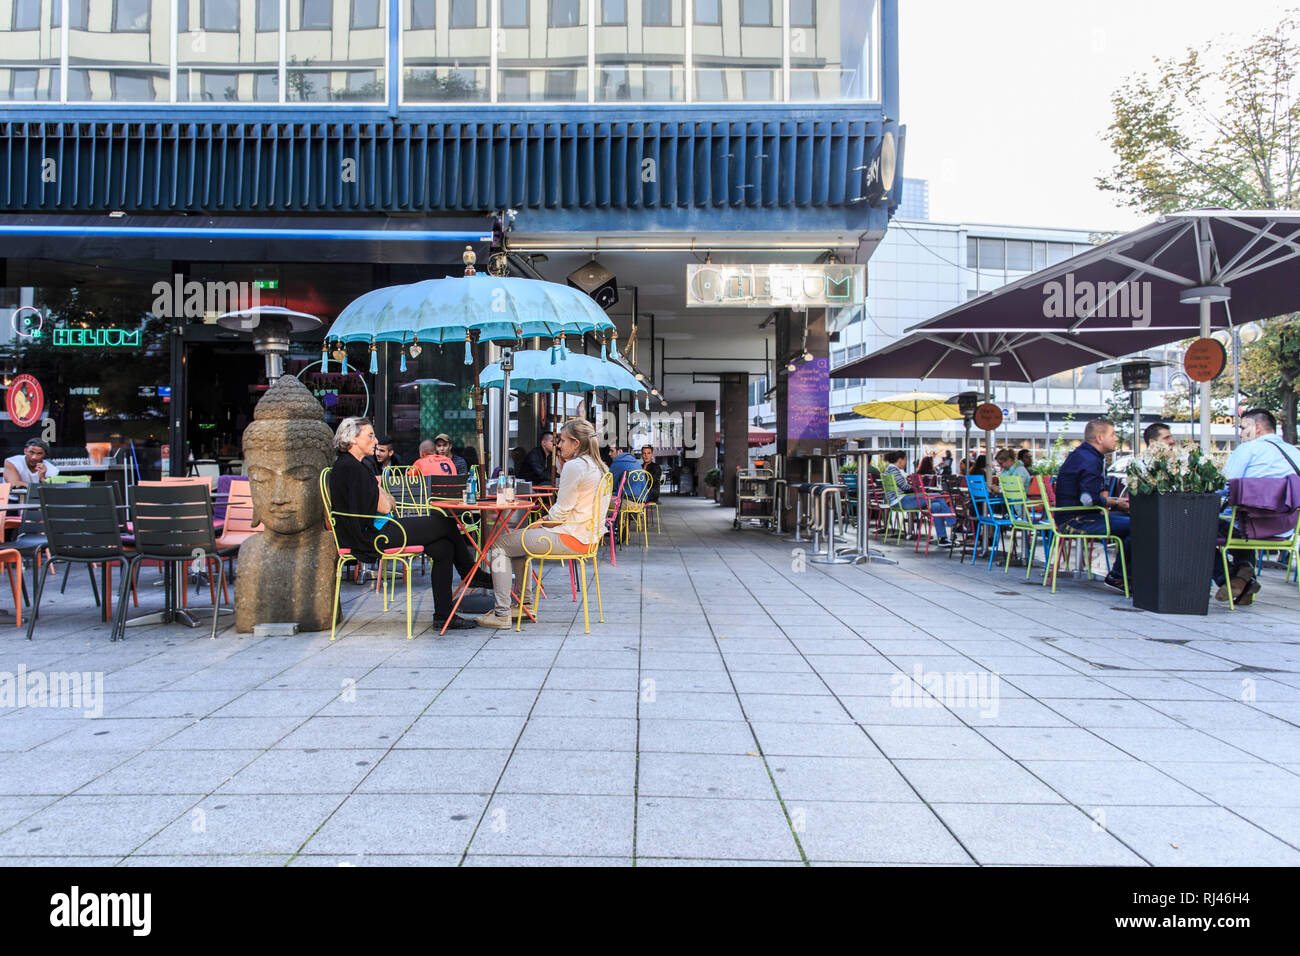 Europa, Deutschland, Assia, Francoforte, Gäste in der Nachmittagssonne in einem Straßencafé Foto Stock